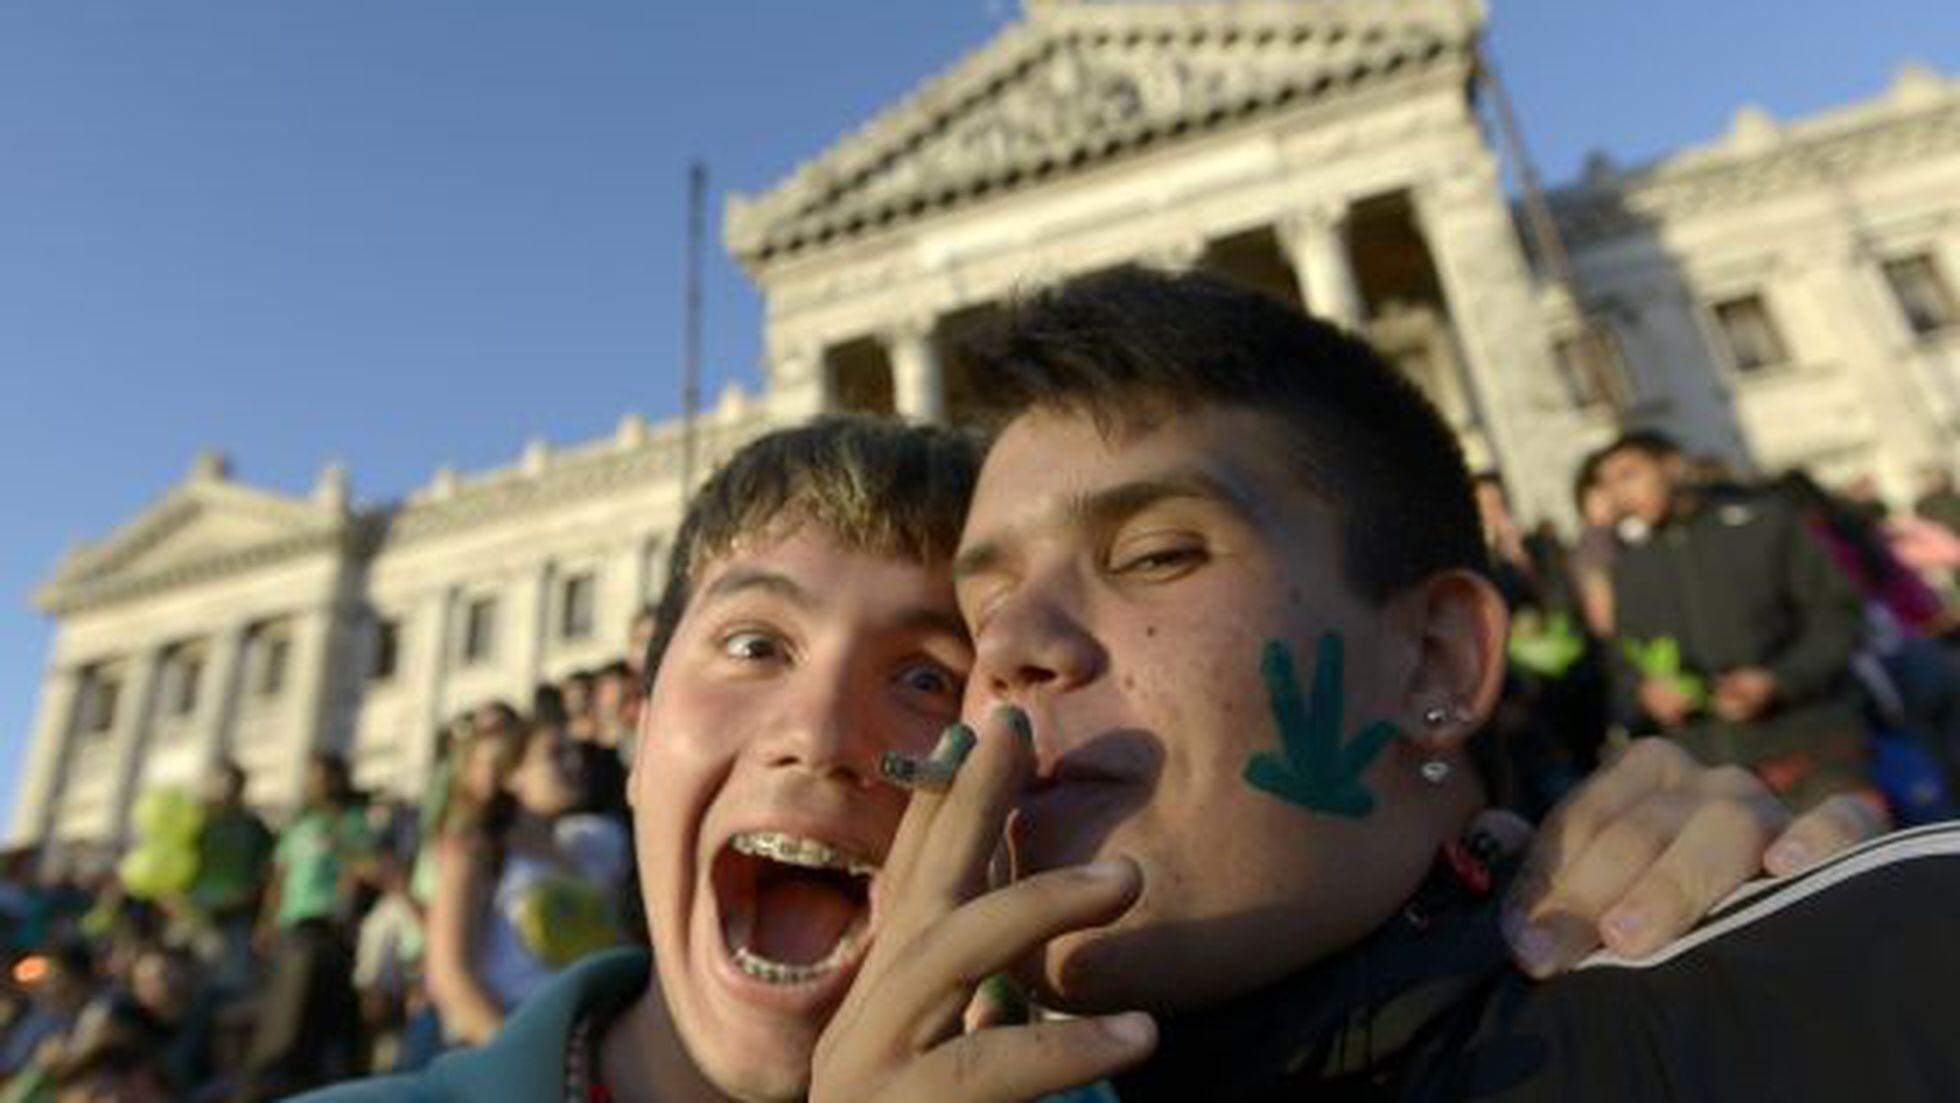 Uruguay's Marijuana Bill Faces Political, Economic Obstacles